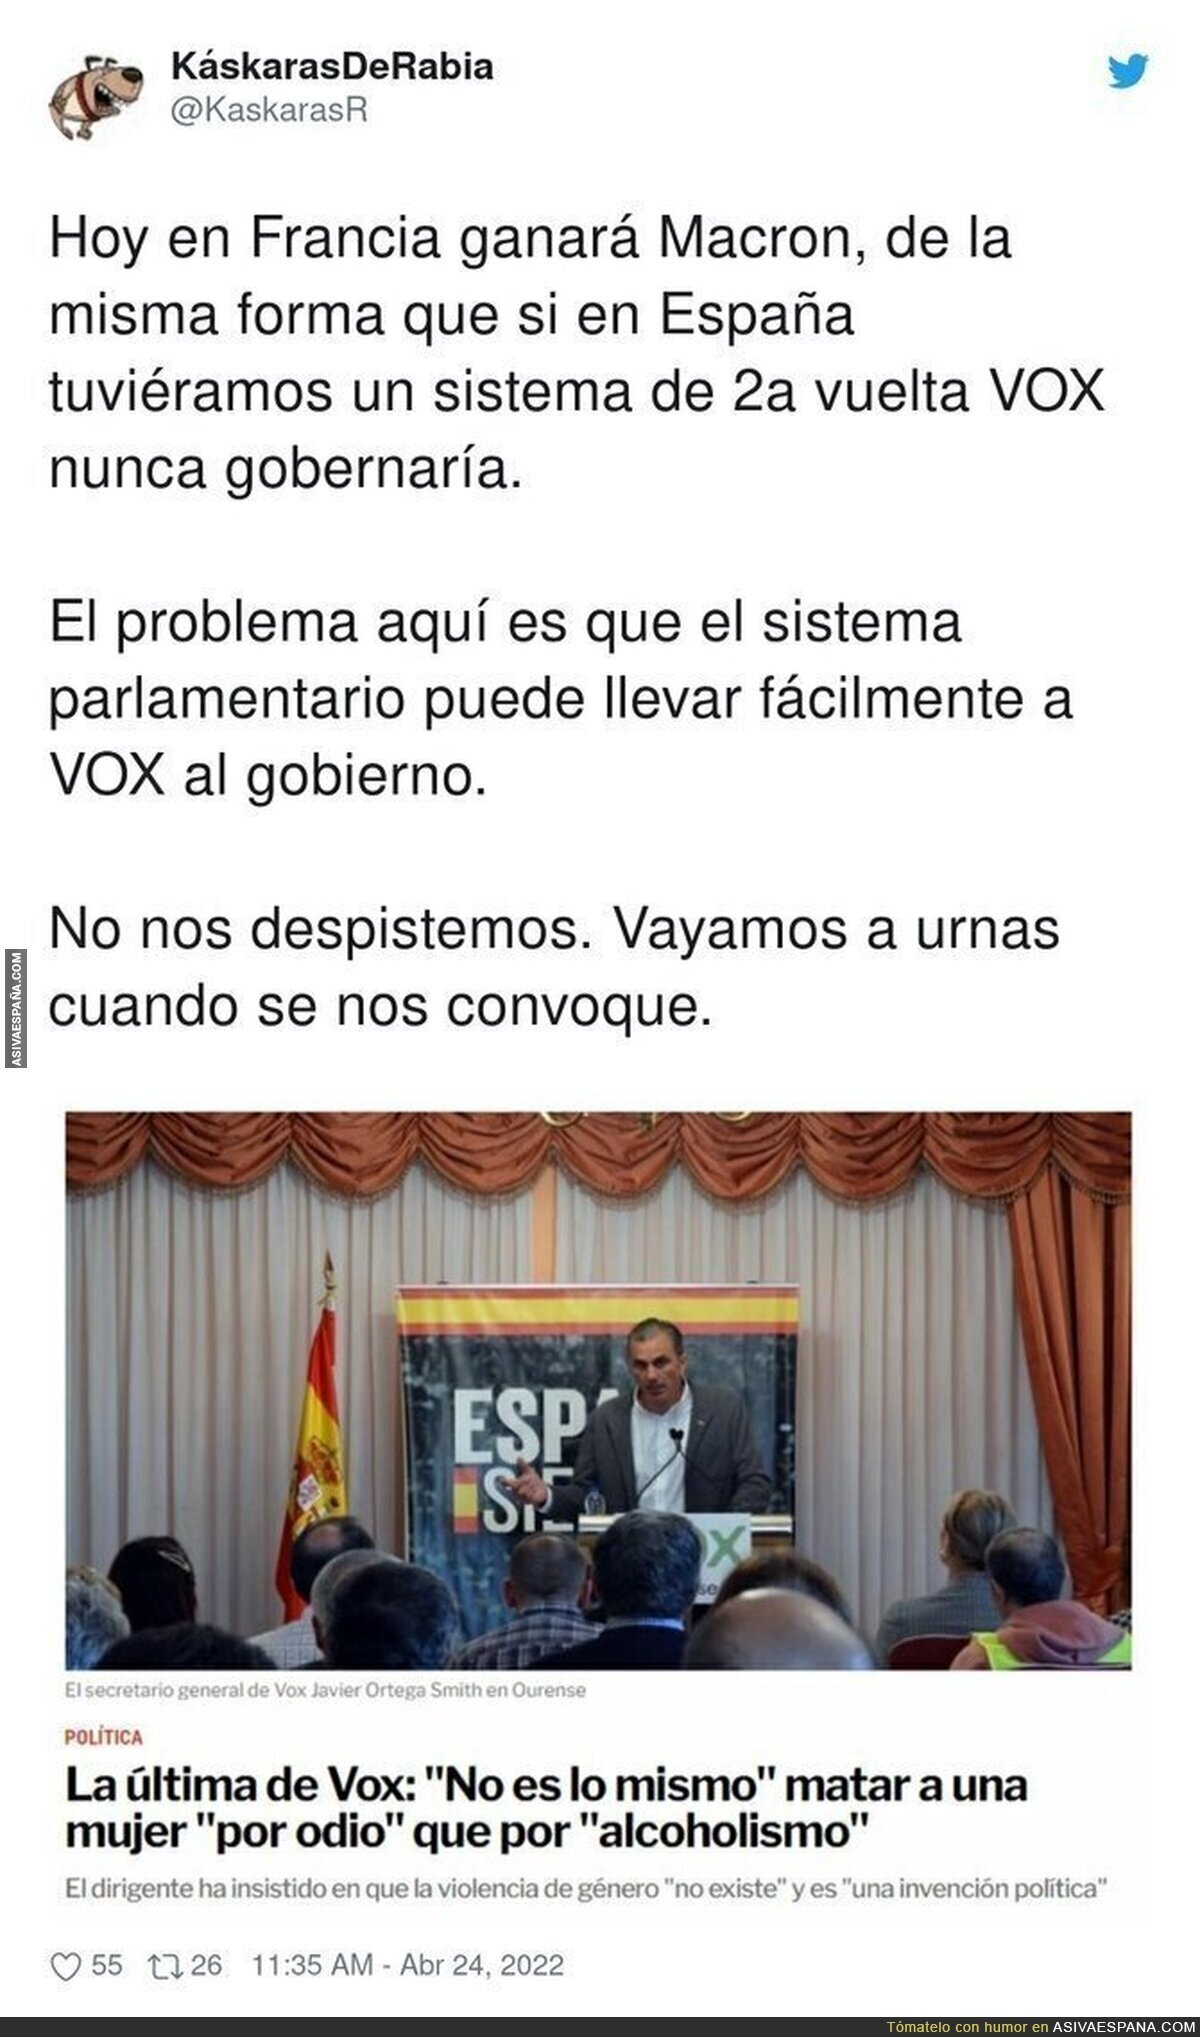 El peligroso sistema español que nos puede colar a VOX en cualquier momento